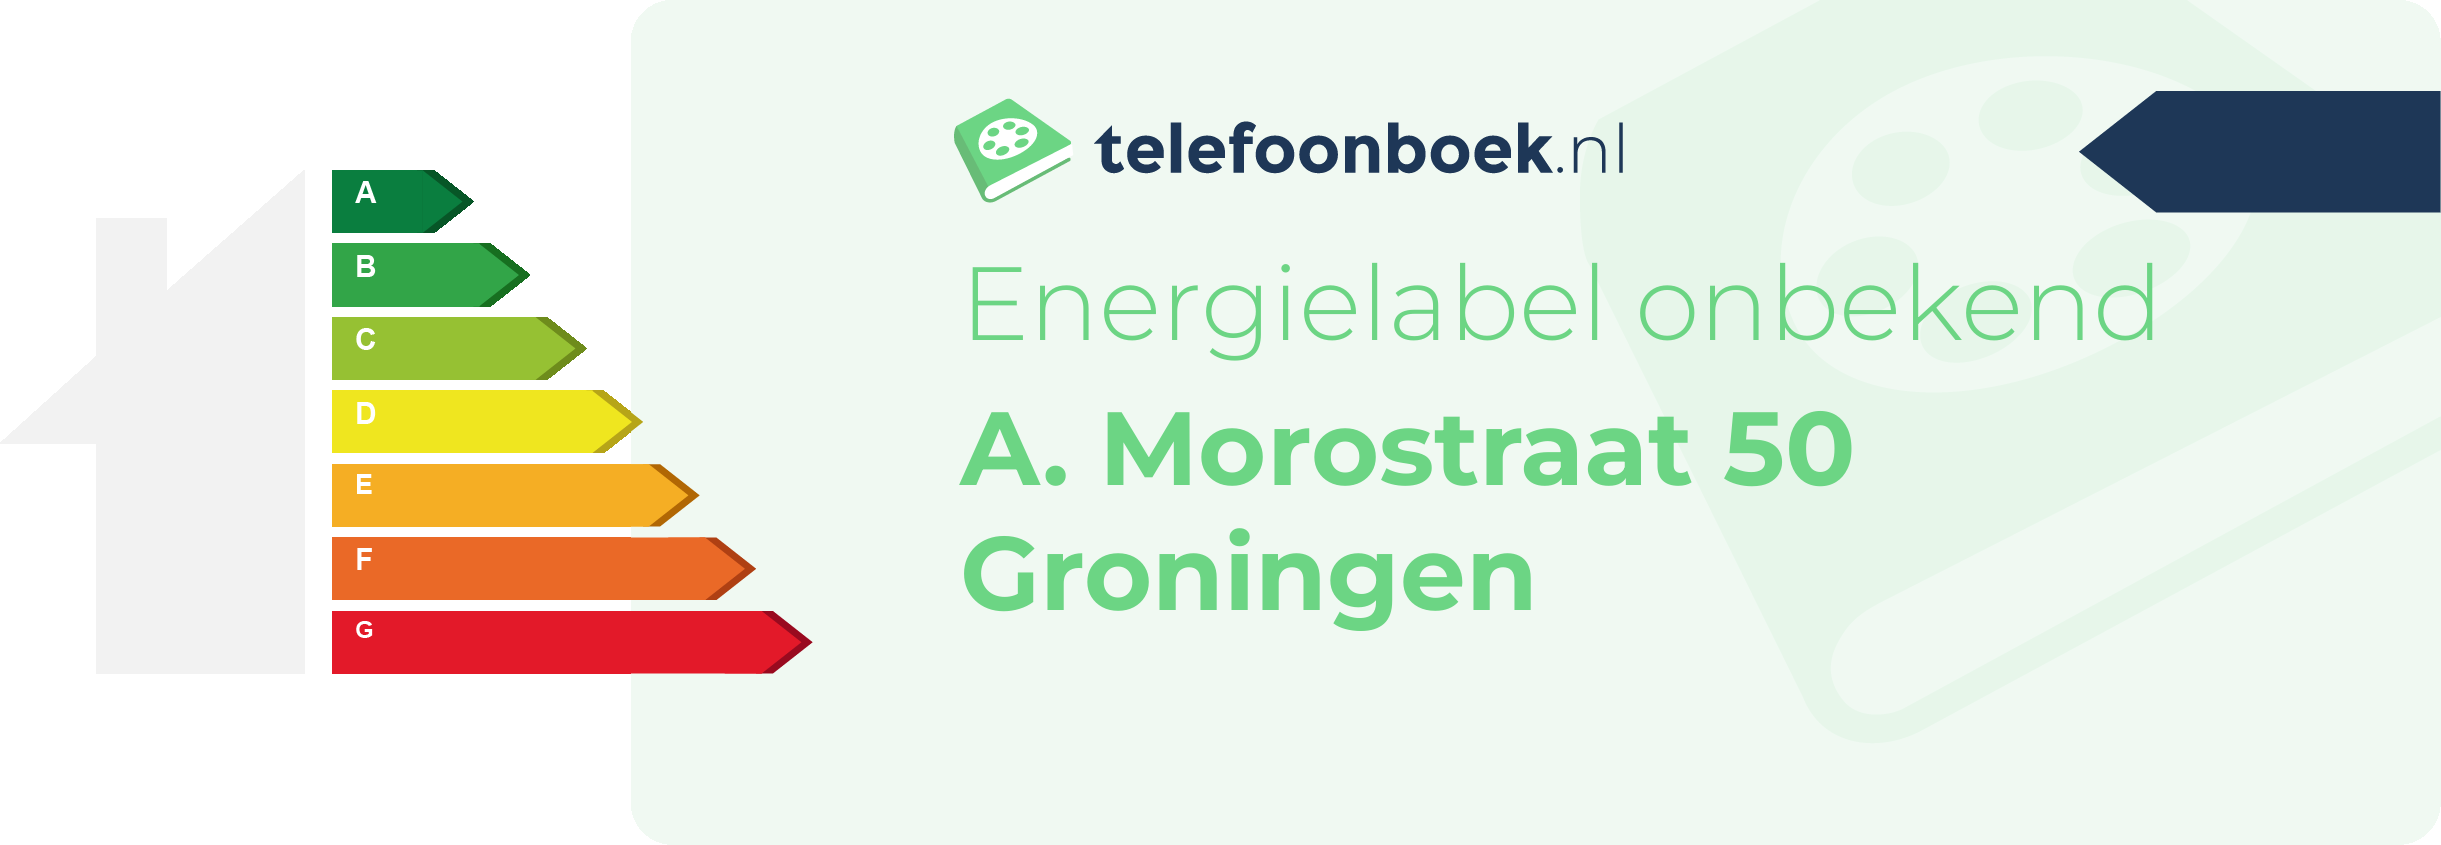 Energielabel A. Morostraat 50 Groningen